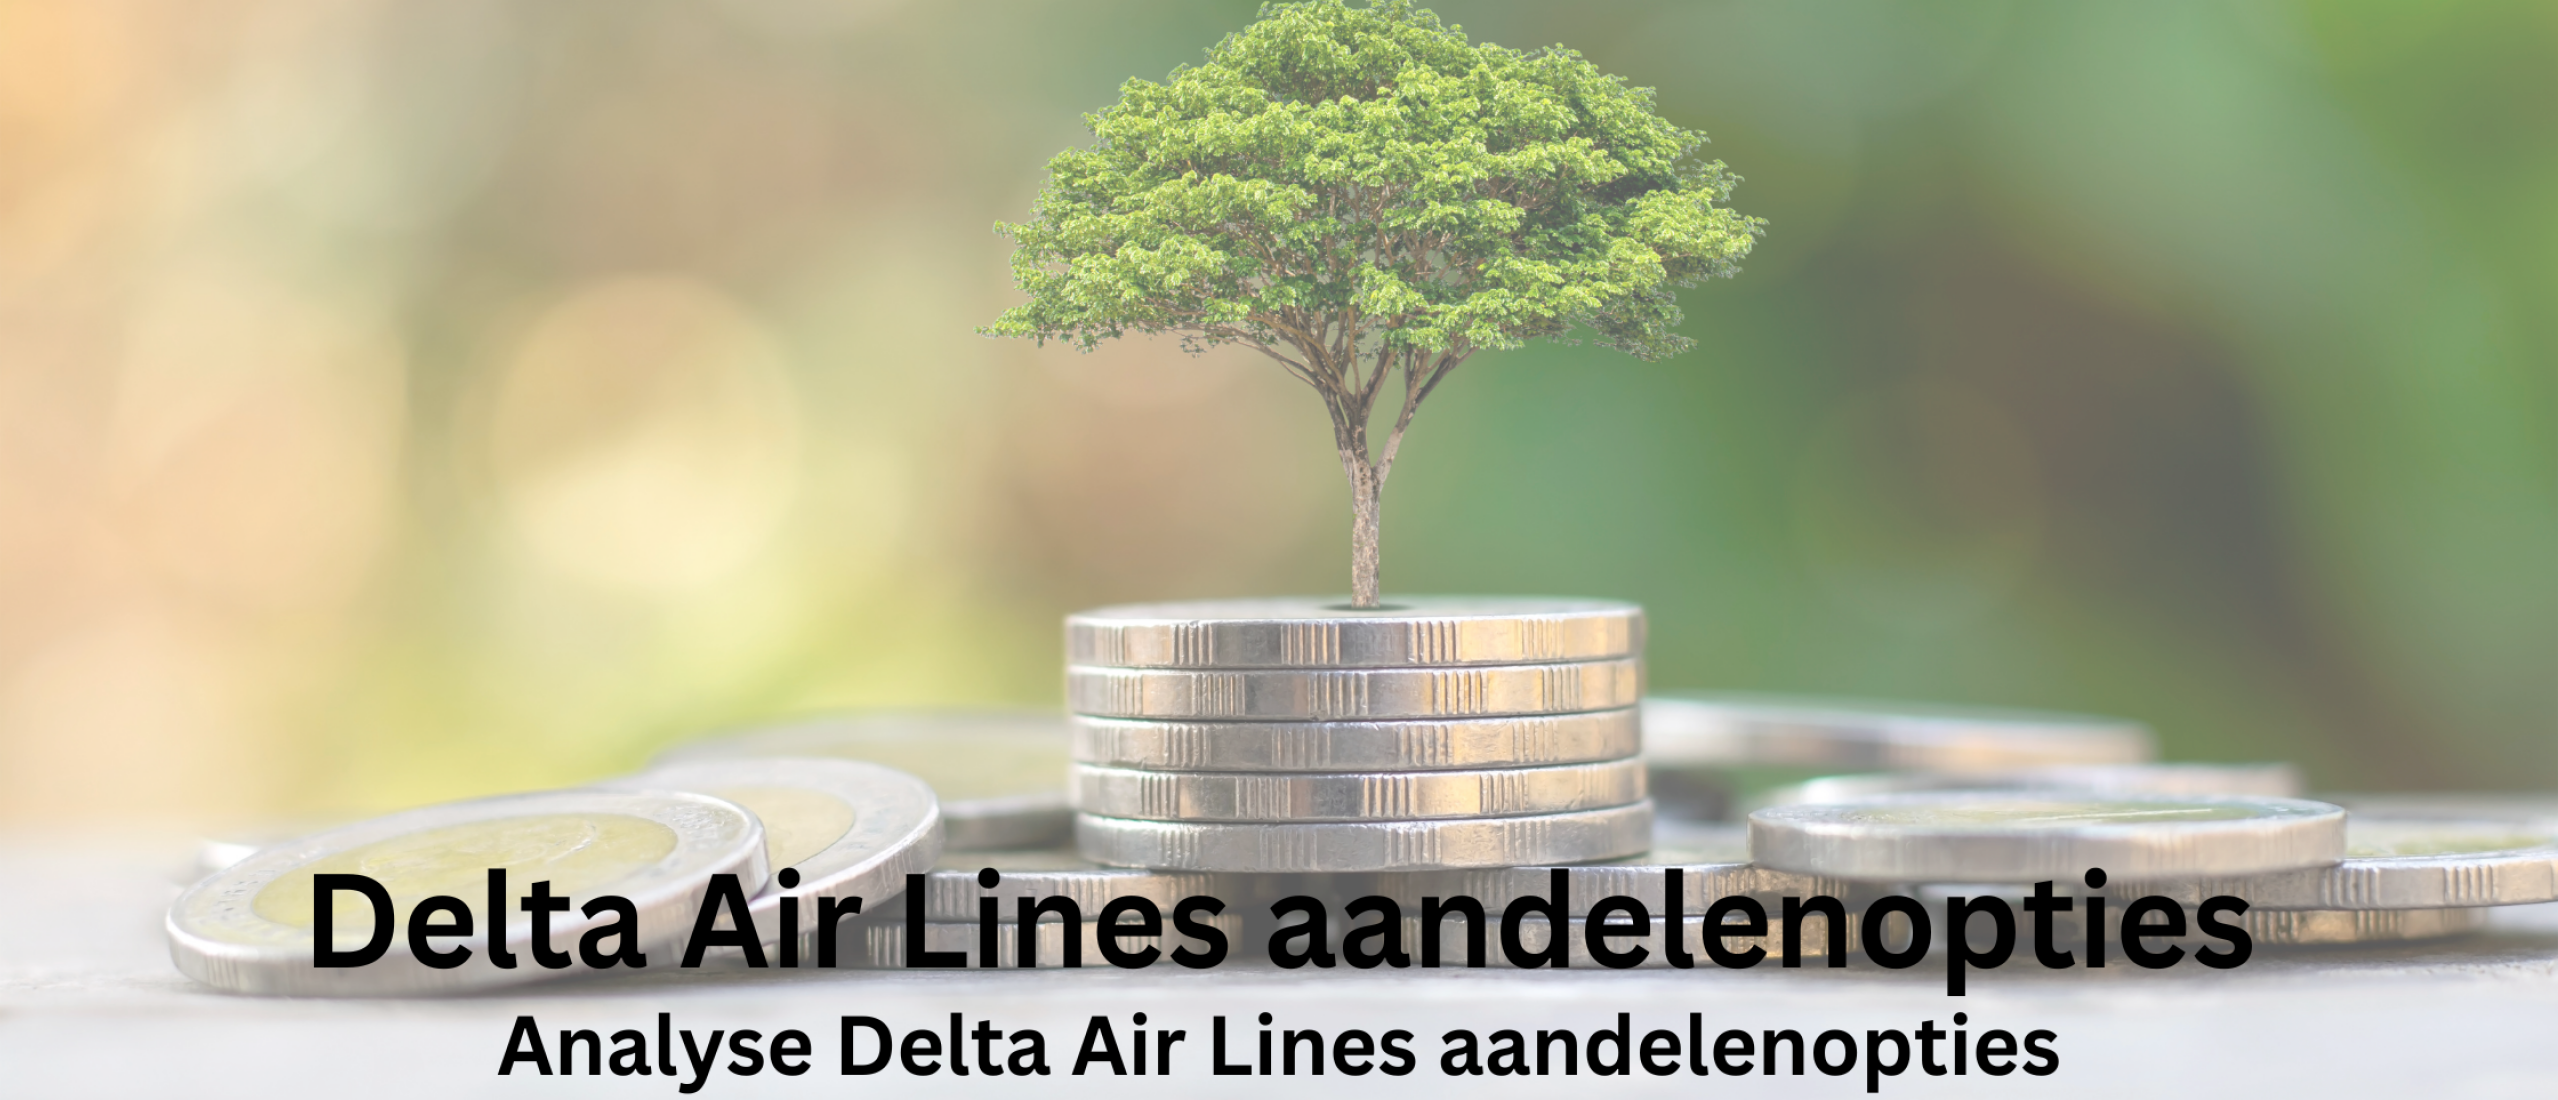 Delta Air Lines aandelen opties kopen | Happy Investors